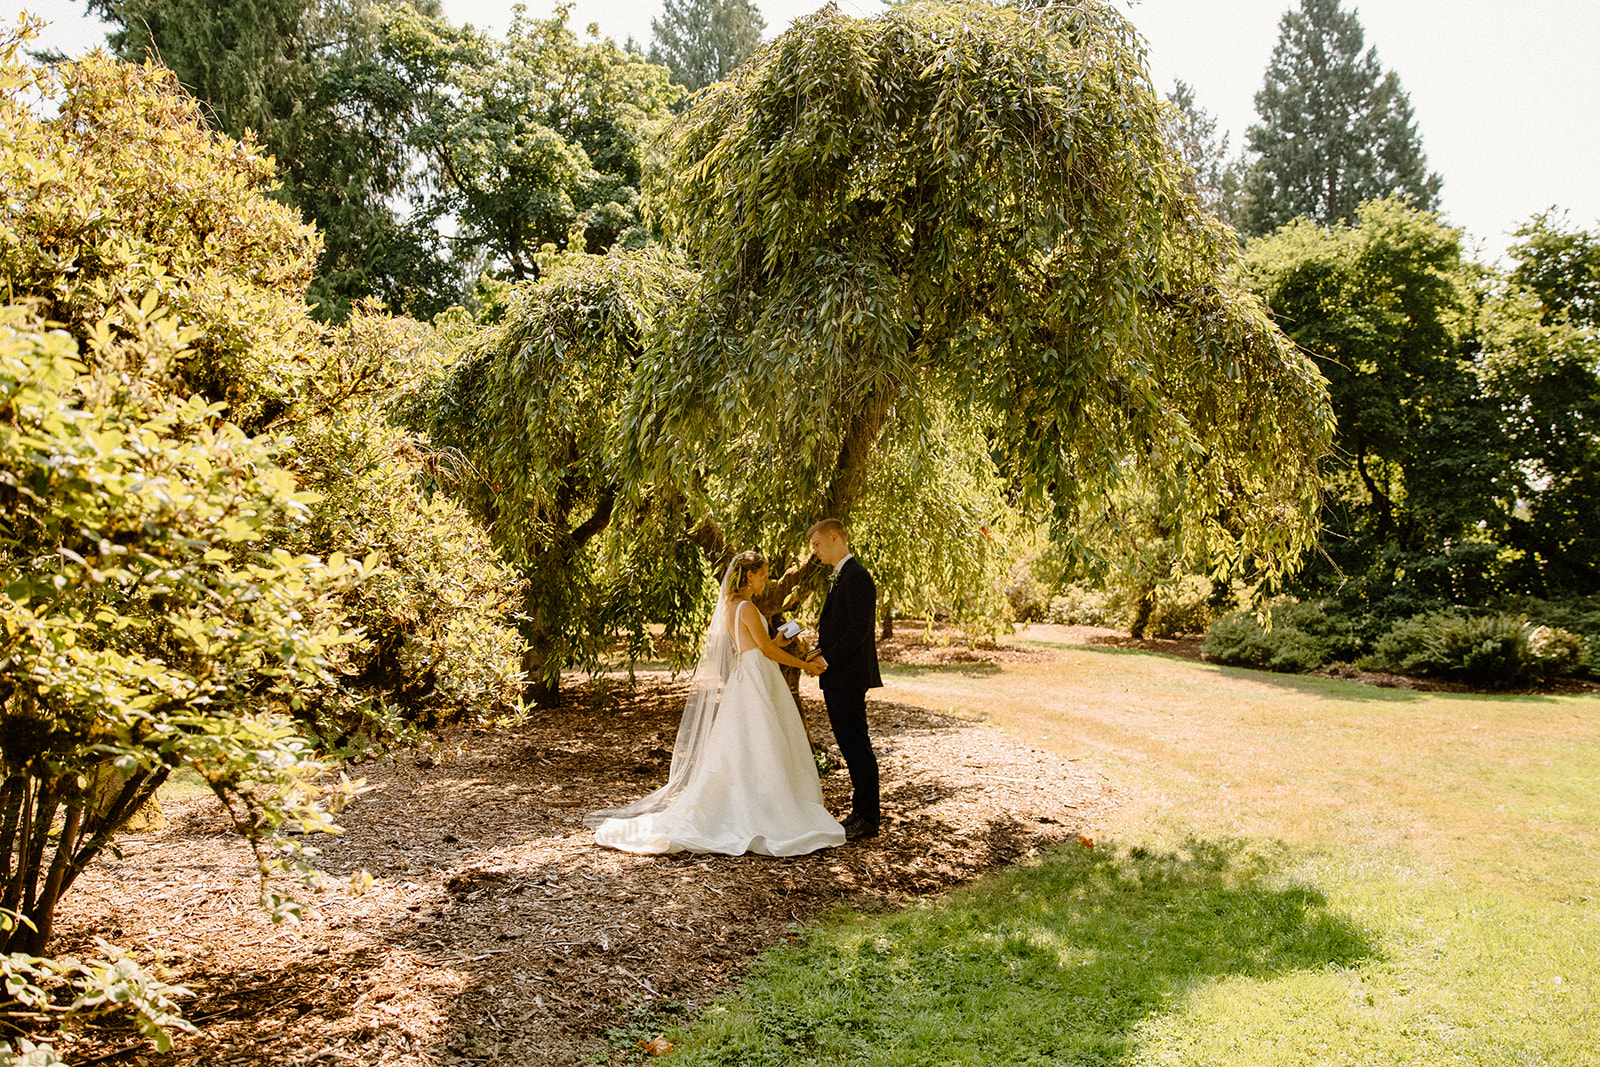 Seattle Washington wedding at Washington Park Arboretum